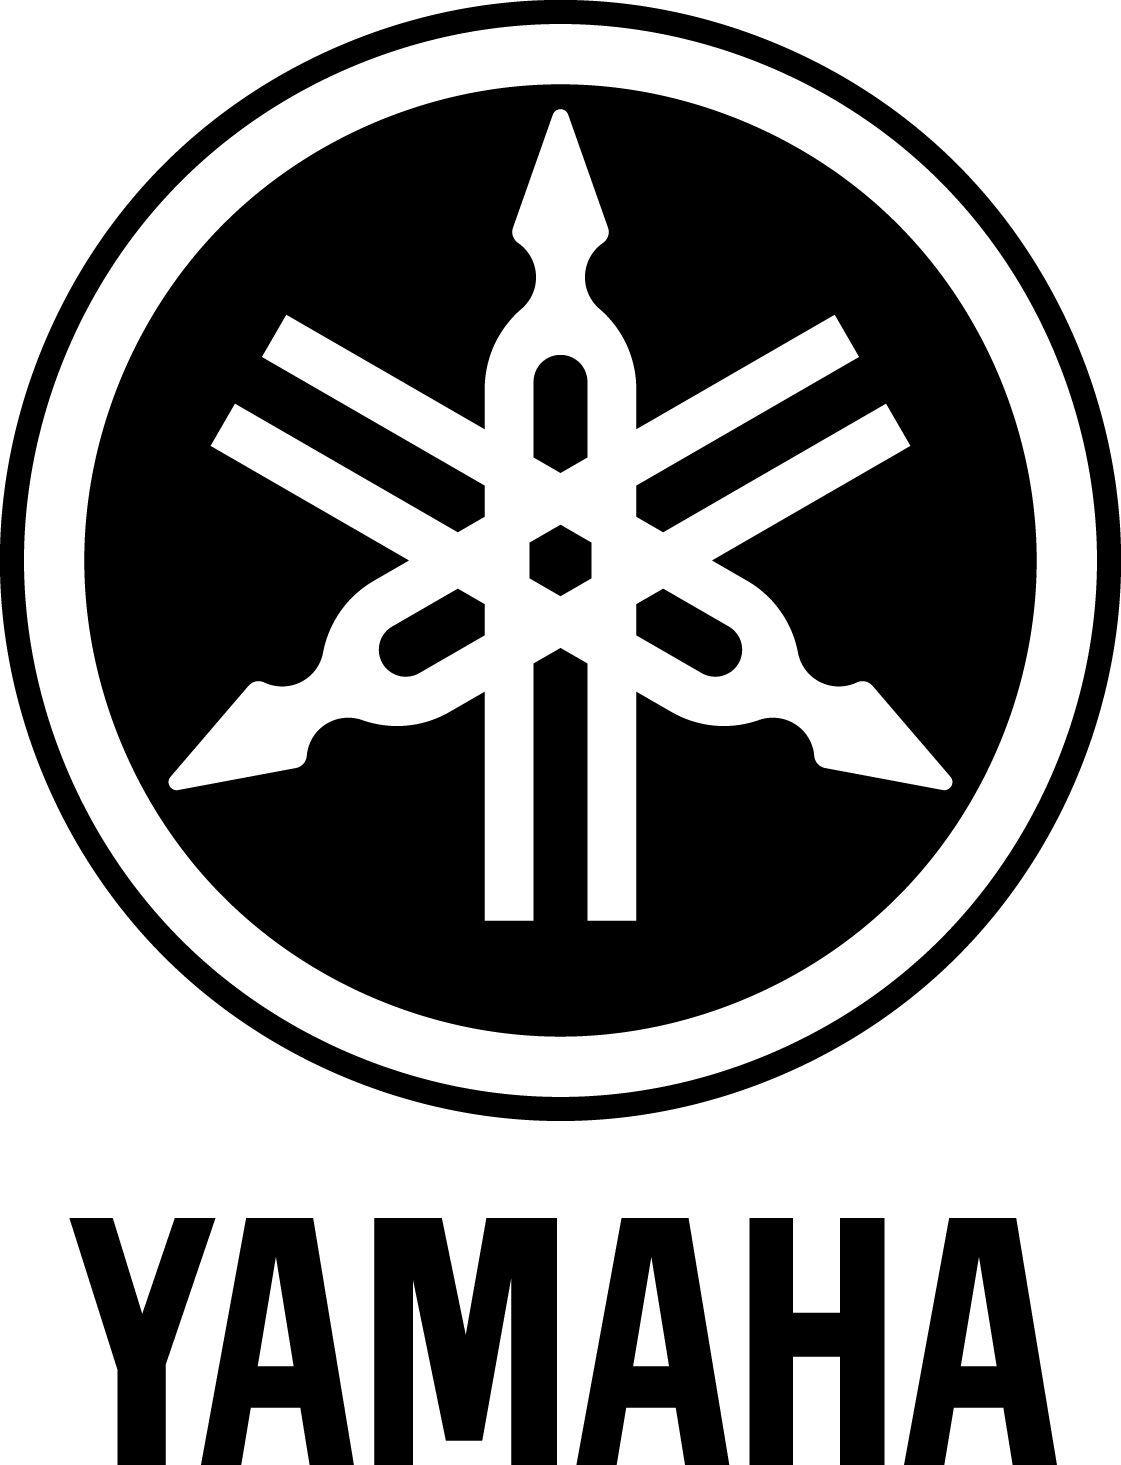 yamaha Logo. Branded Logos. Tuning fork, Logos